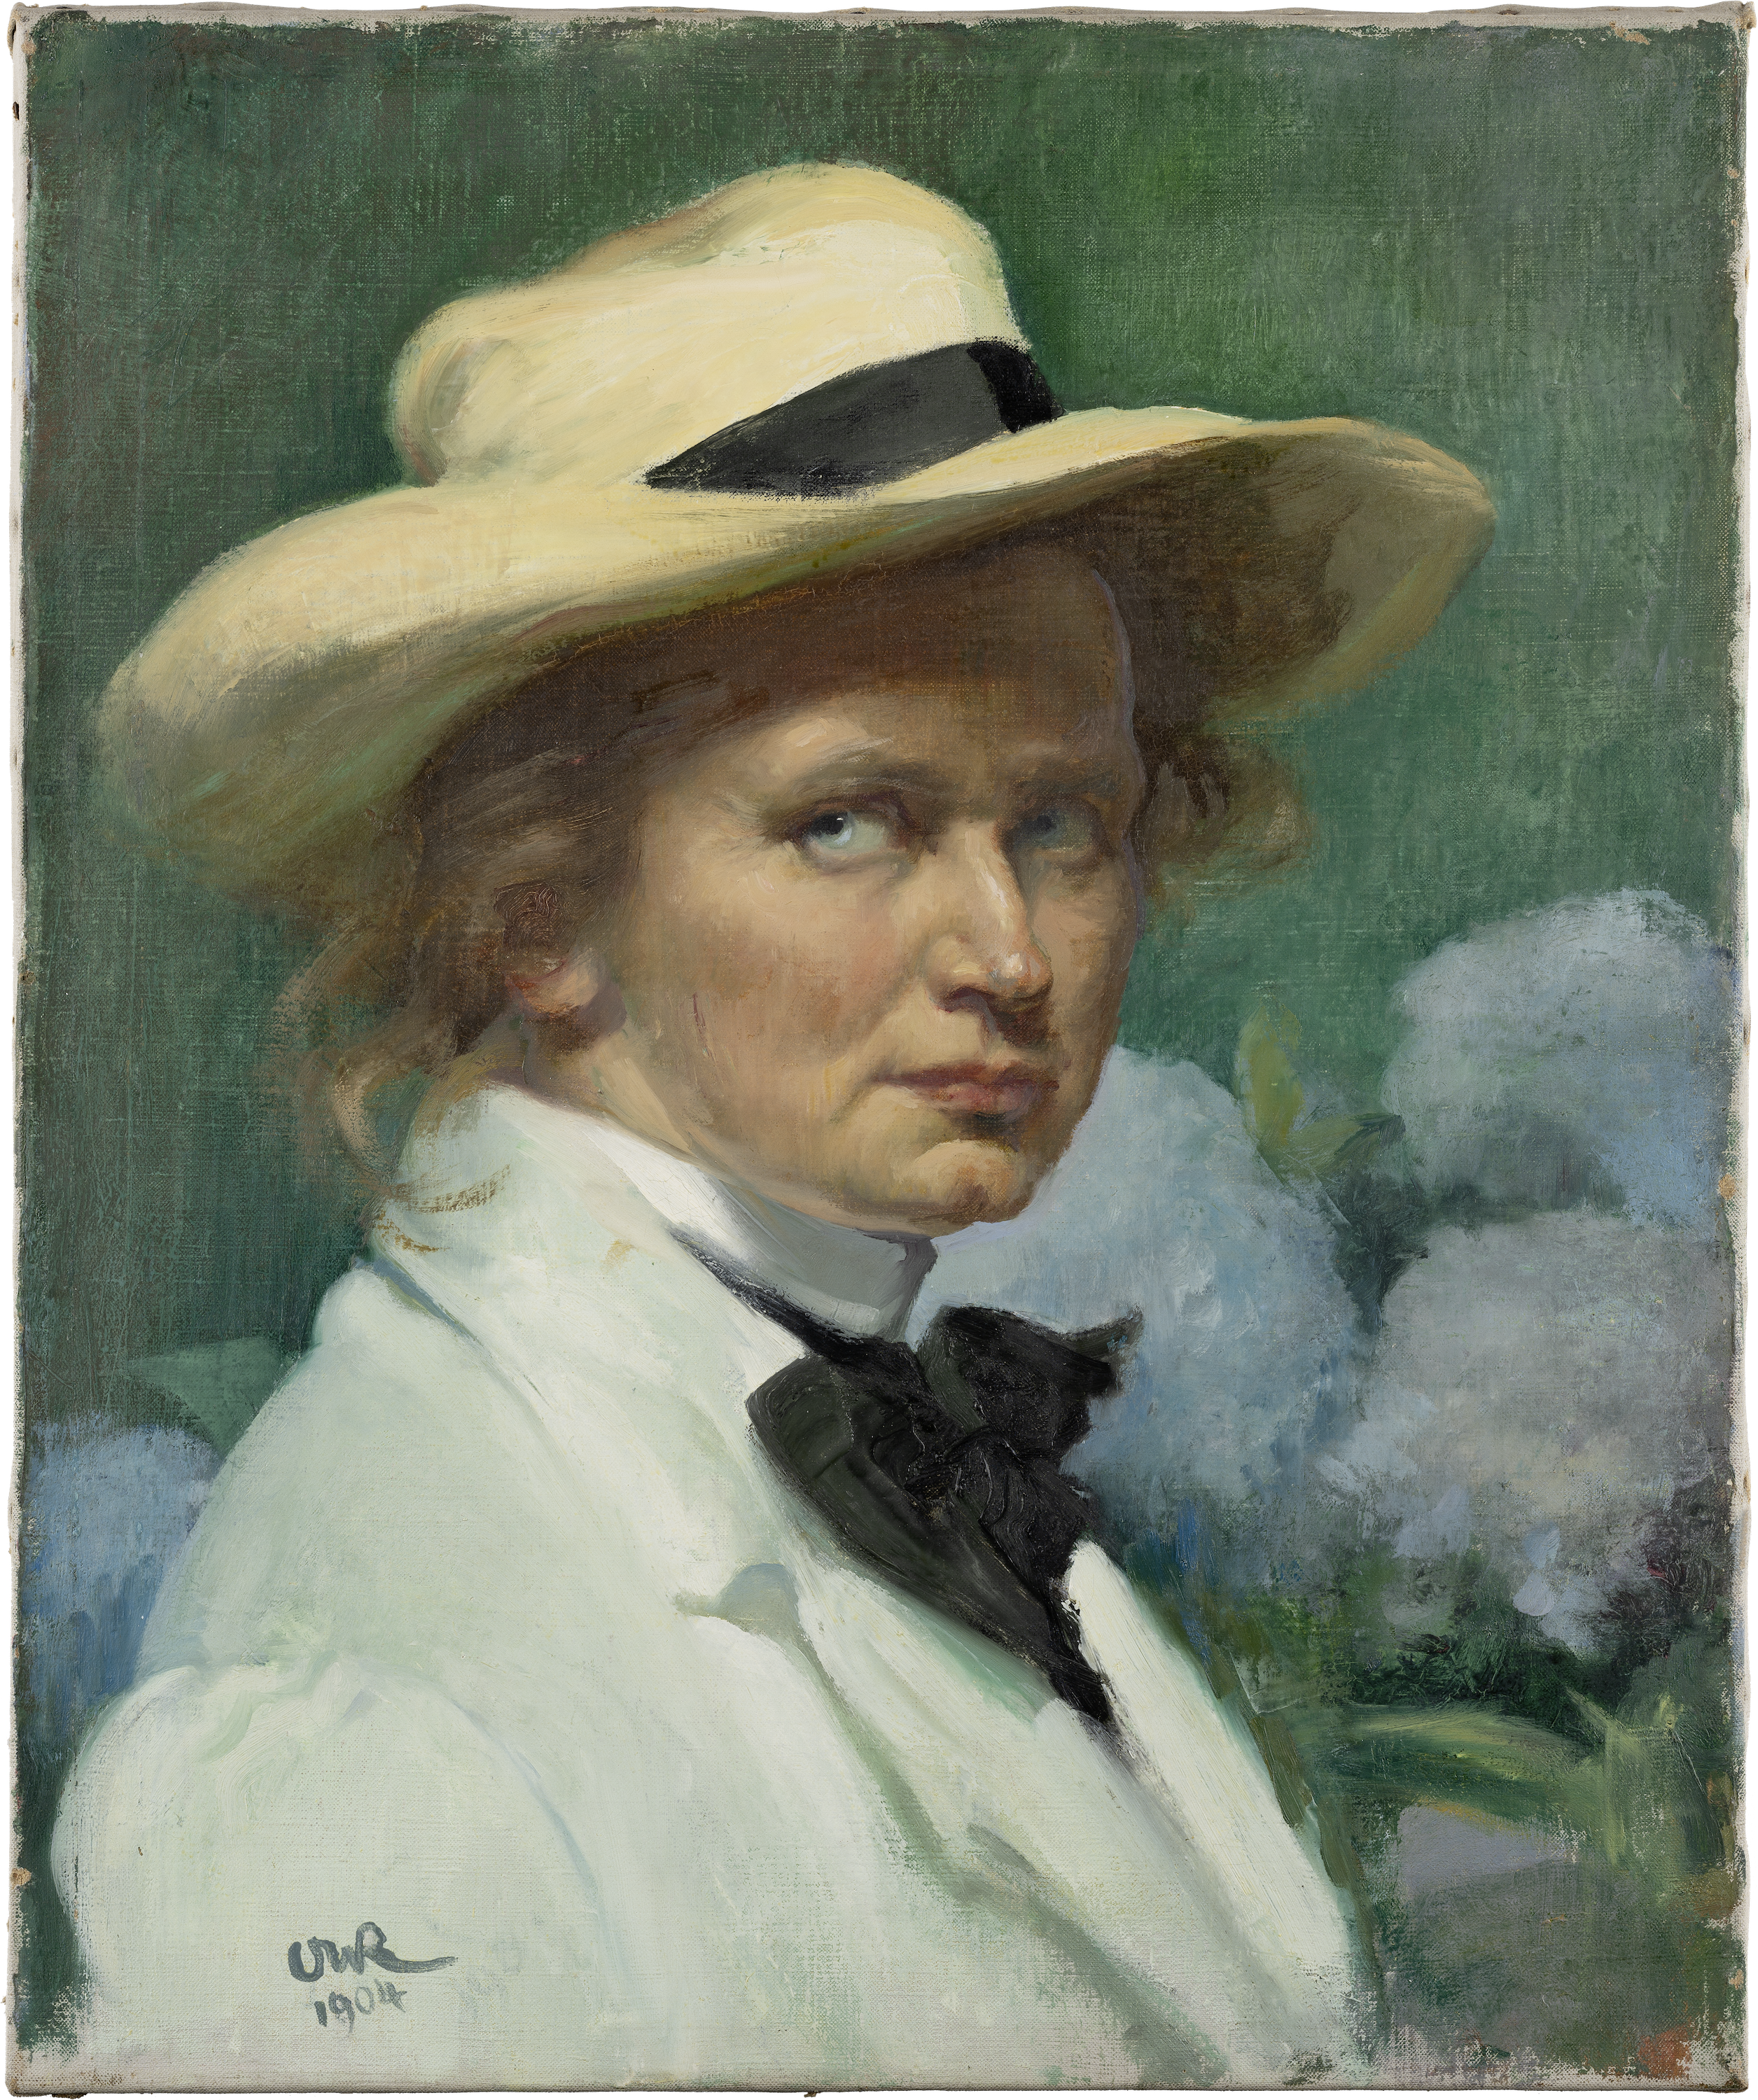 Аутопортрет са шеширом by Ottilie W. Roederstein - 1904.године - 55.3 x 46.1 cm 